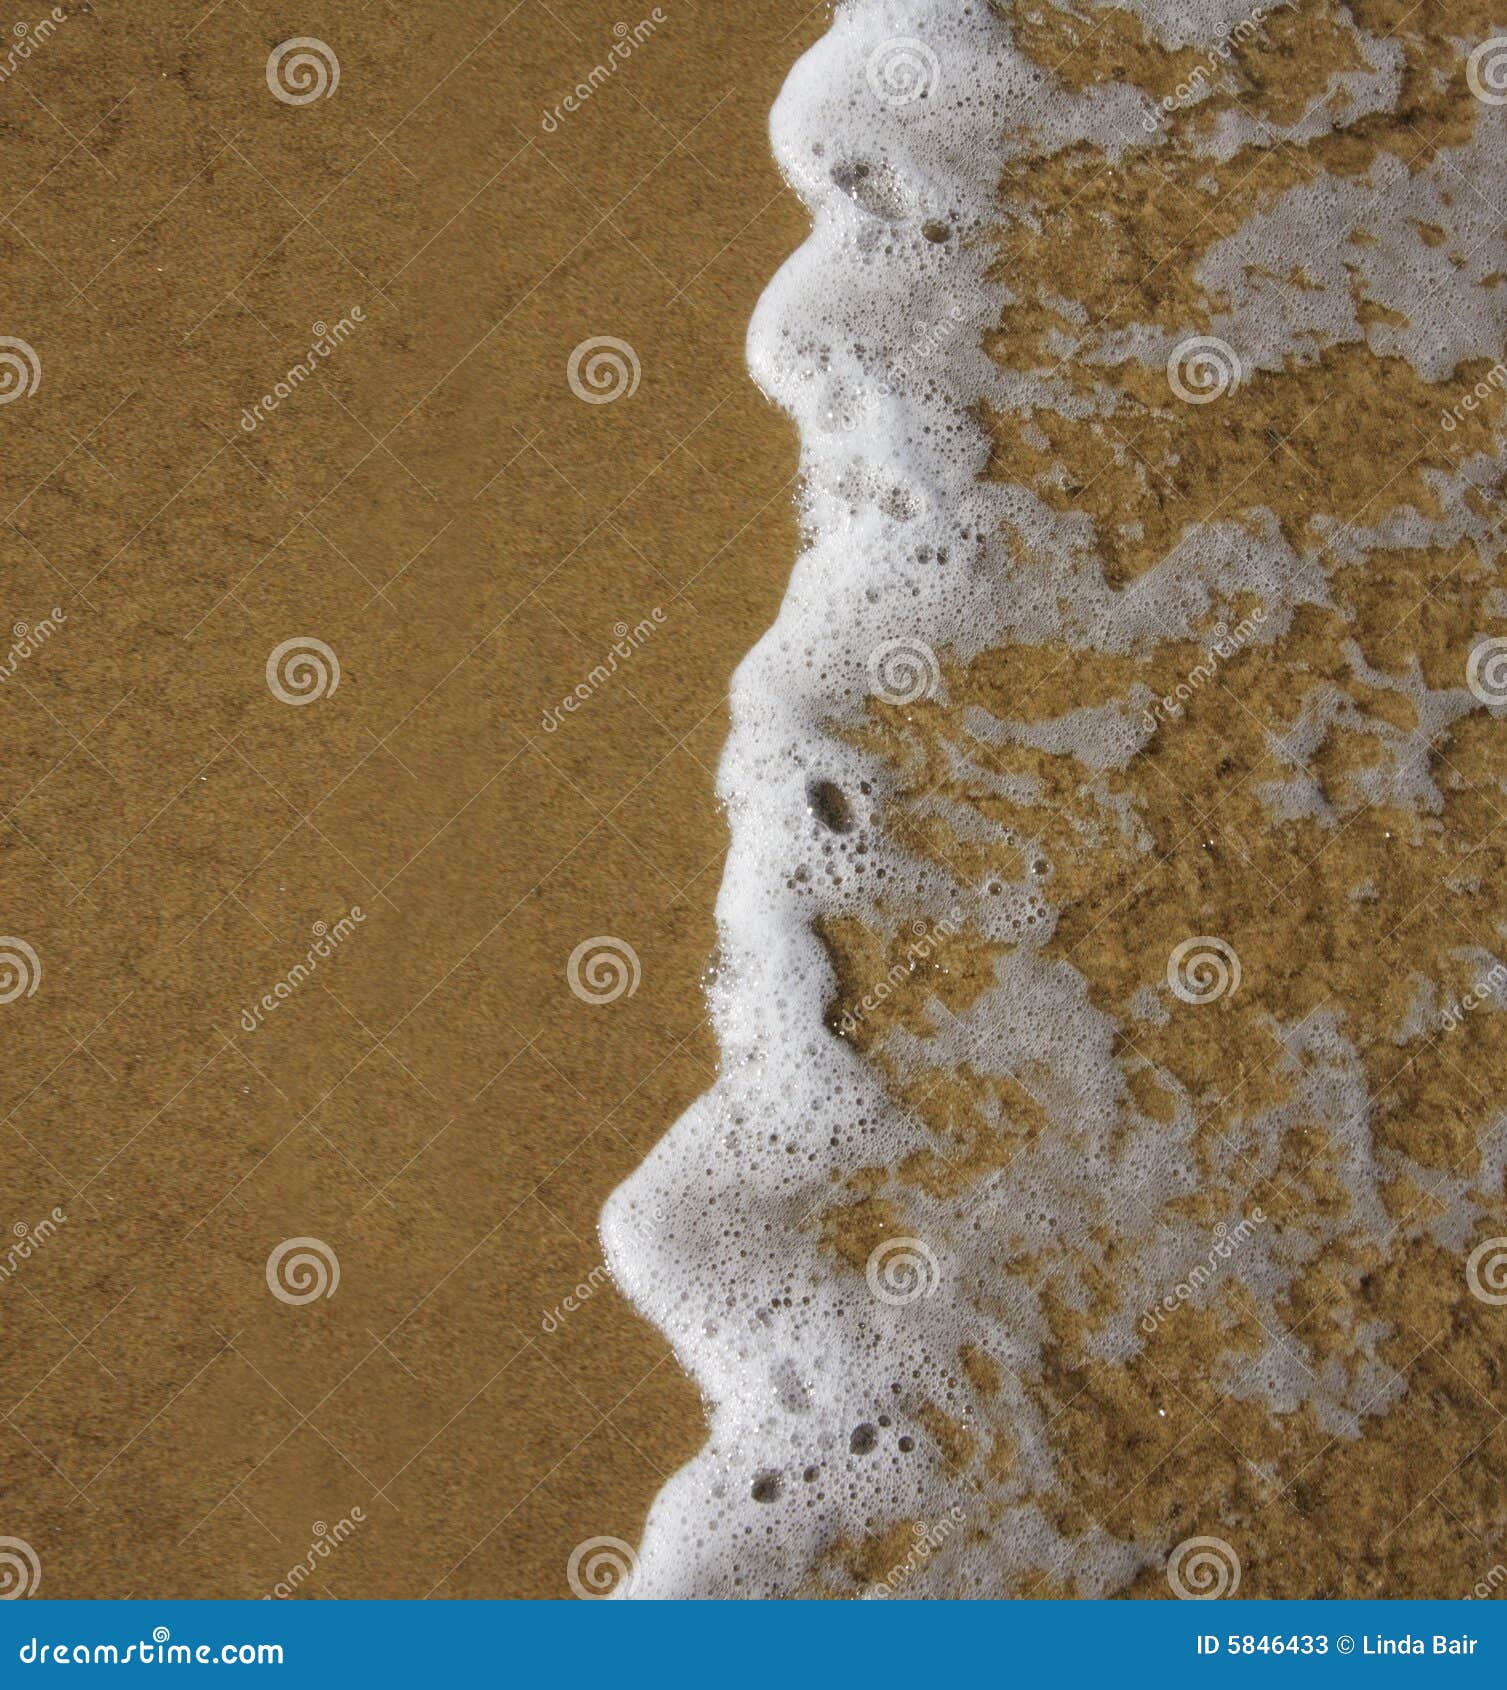 frothy ocean wave on a sandy beach